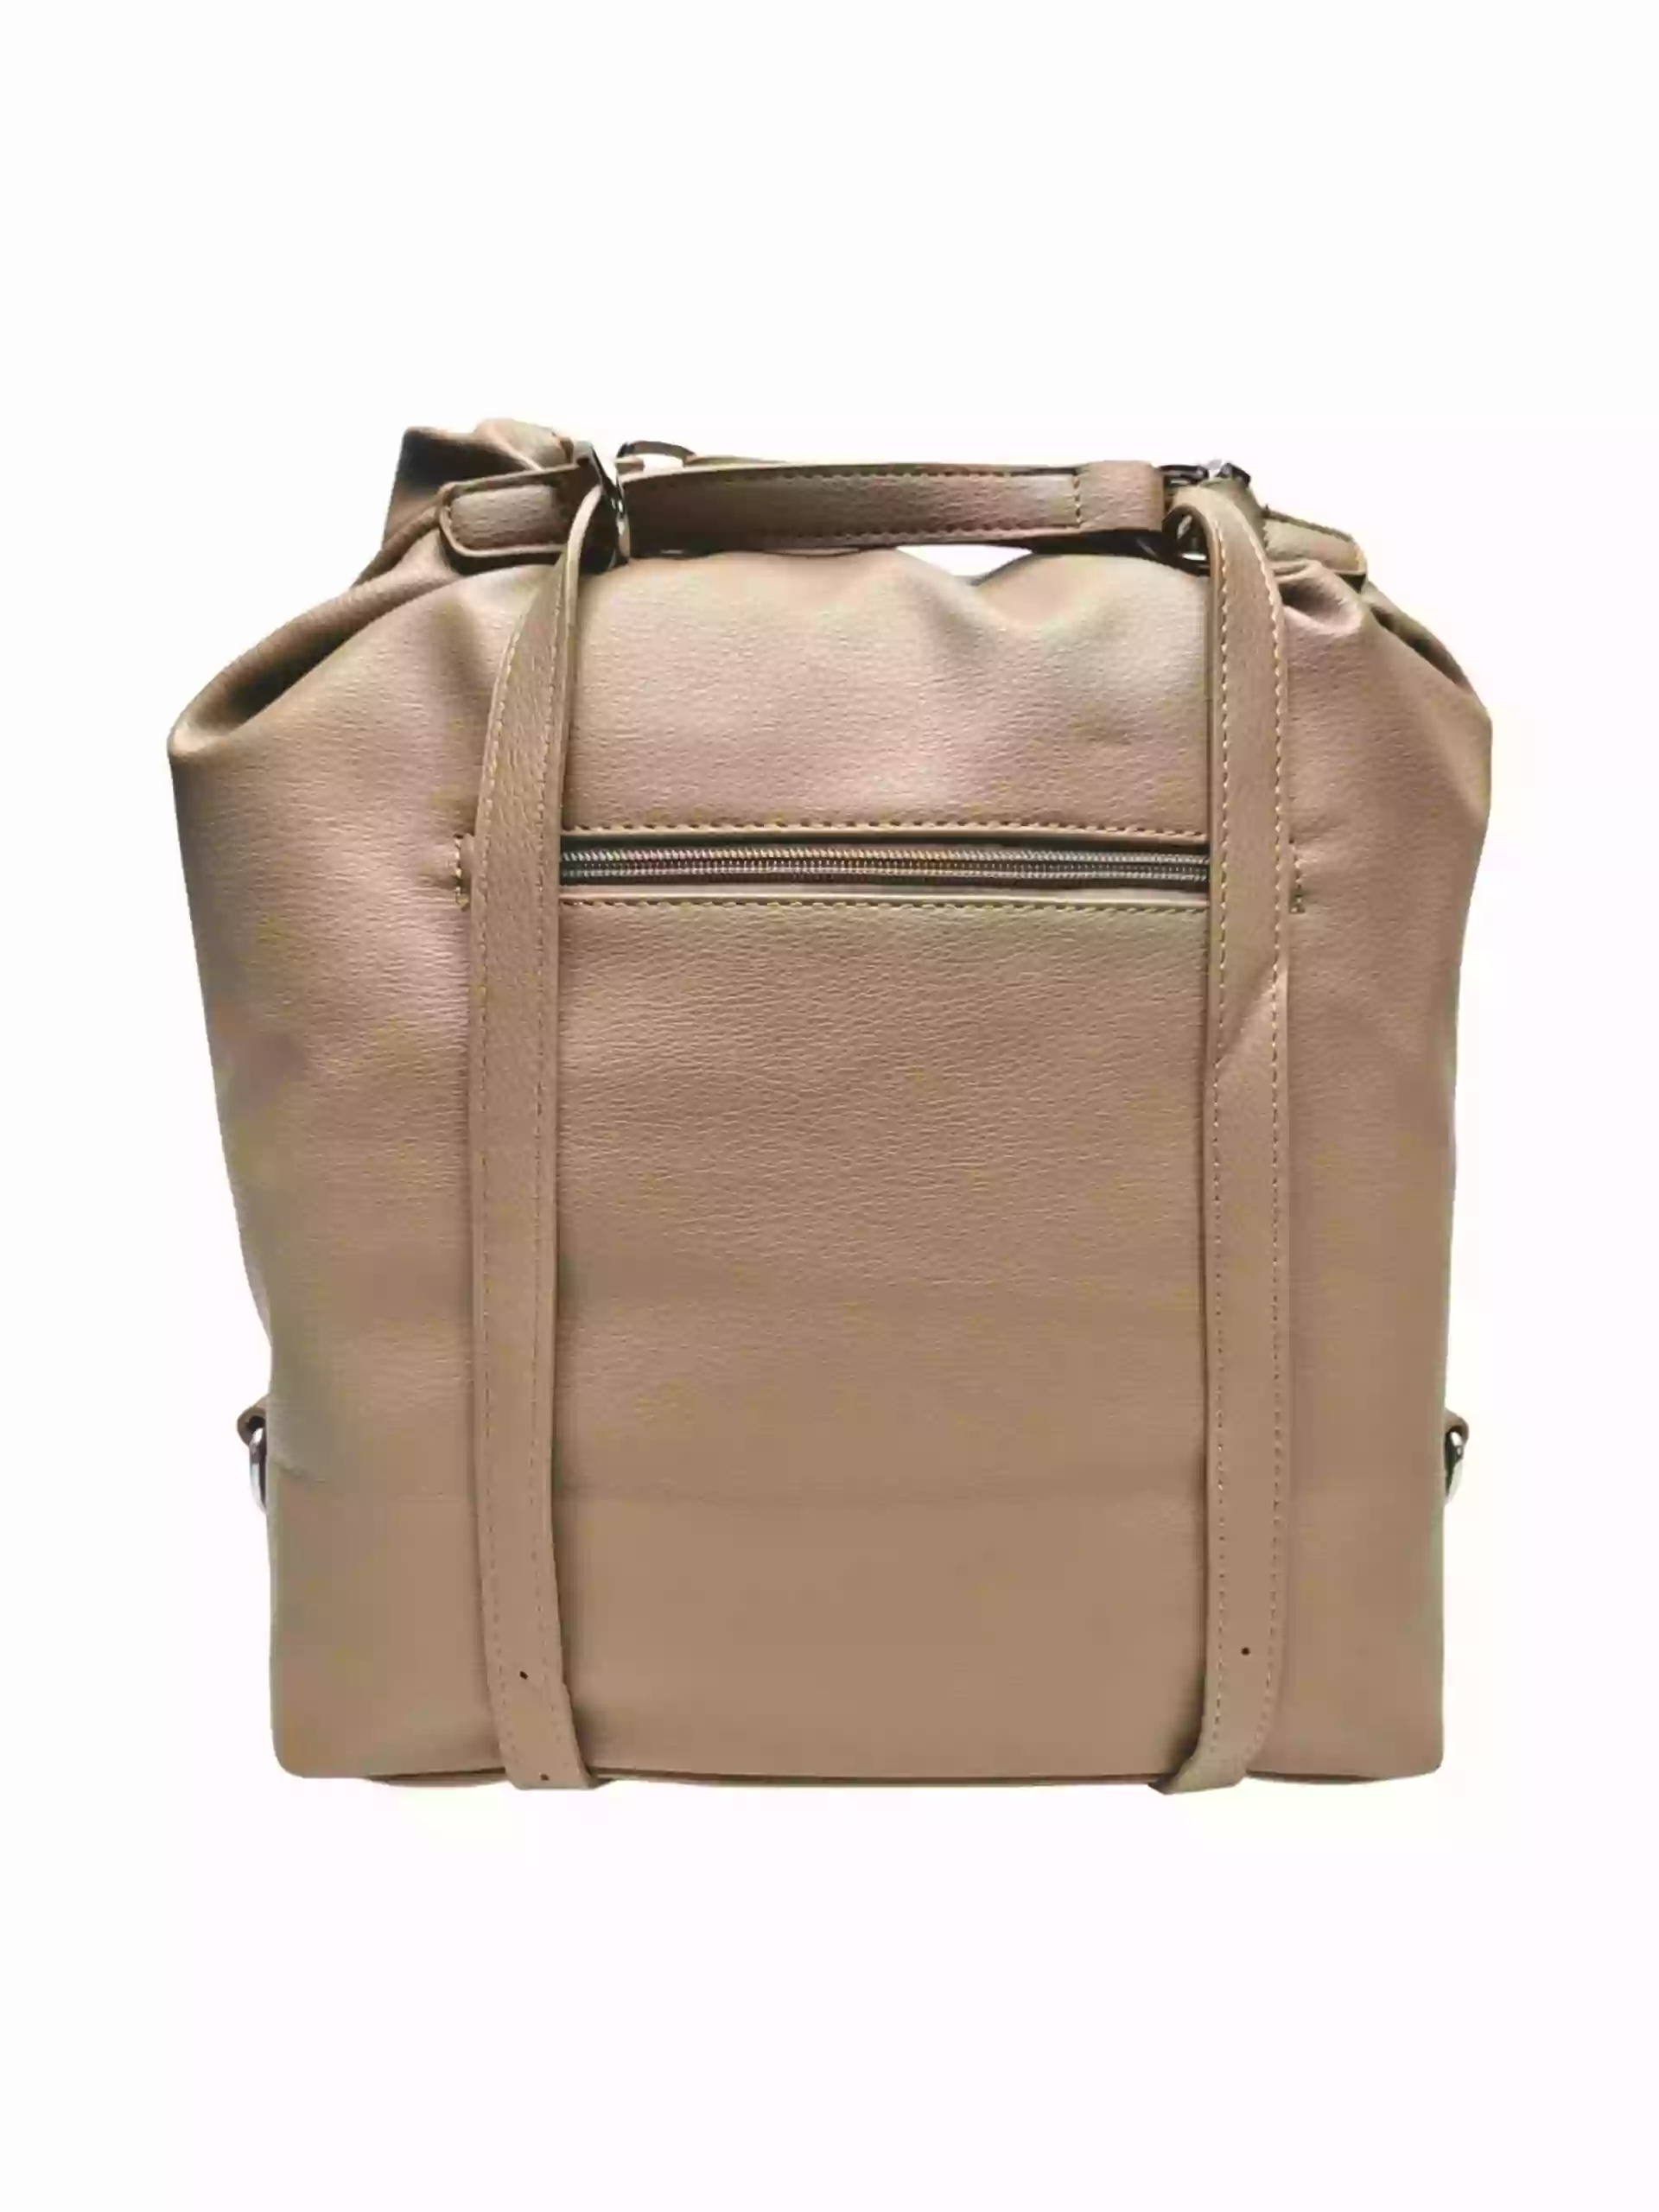 Velká hnědošedá kabelka a batoh v jednom, Tapple, X368, zadní strana kabelko-batohu 2v1 s popruhy